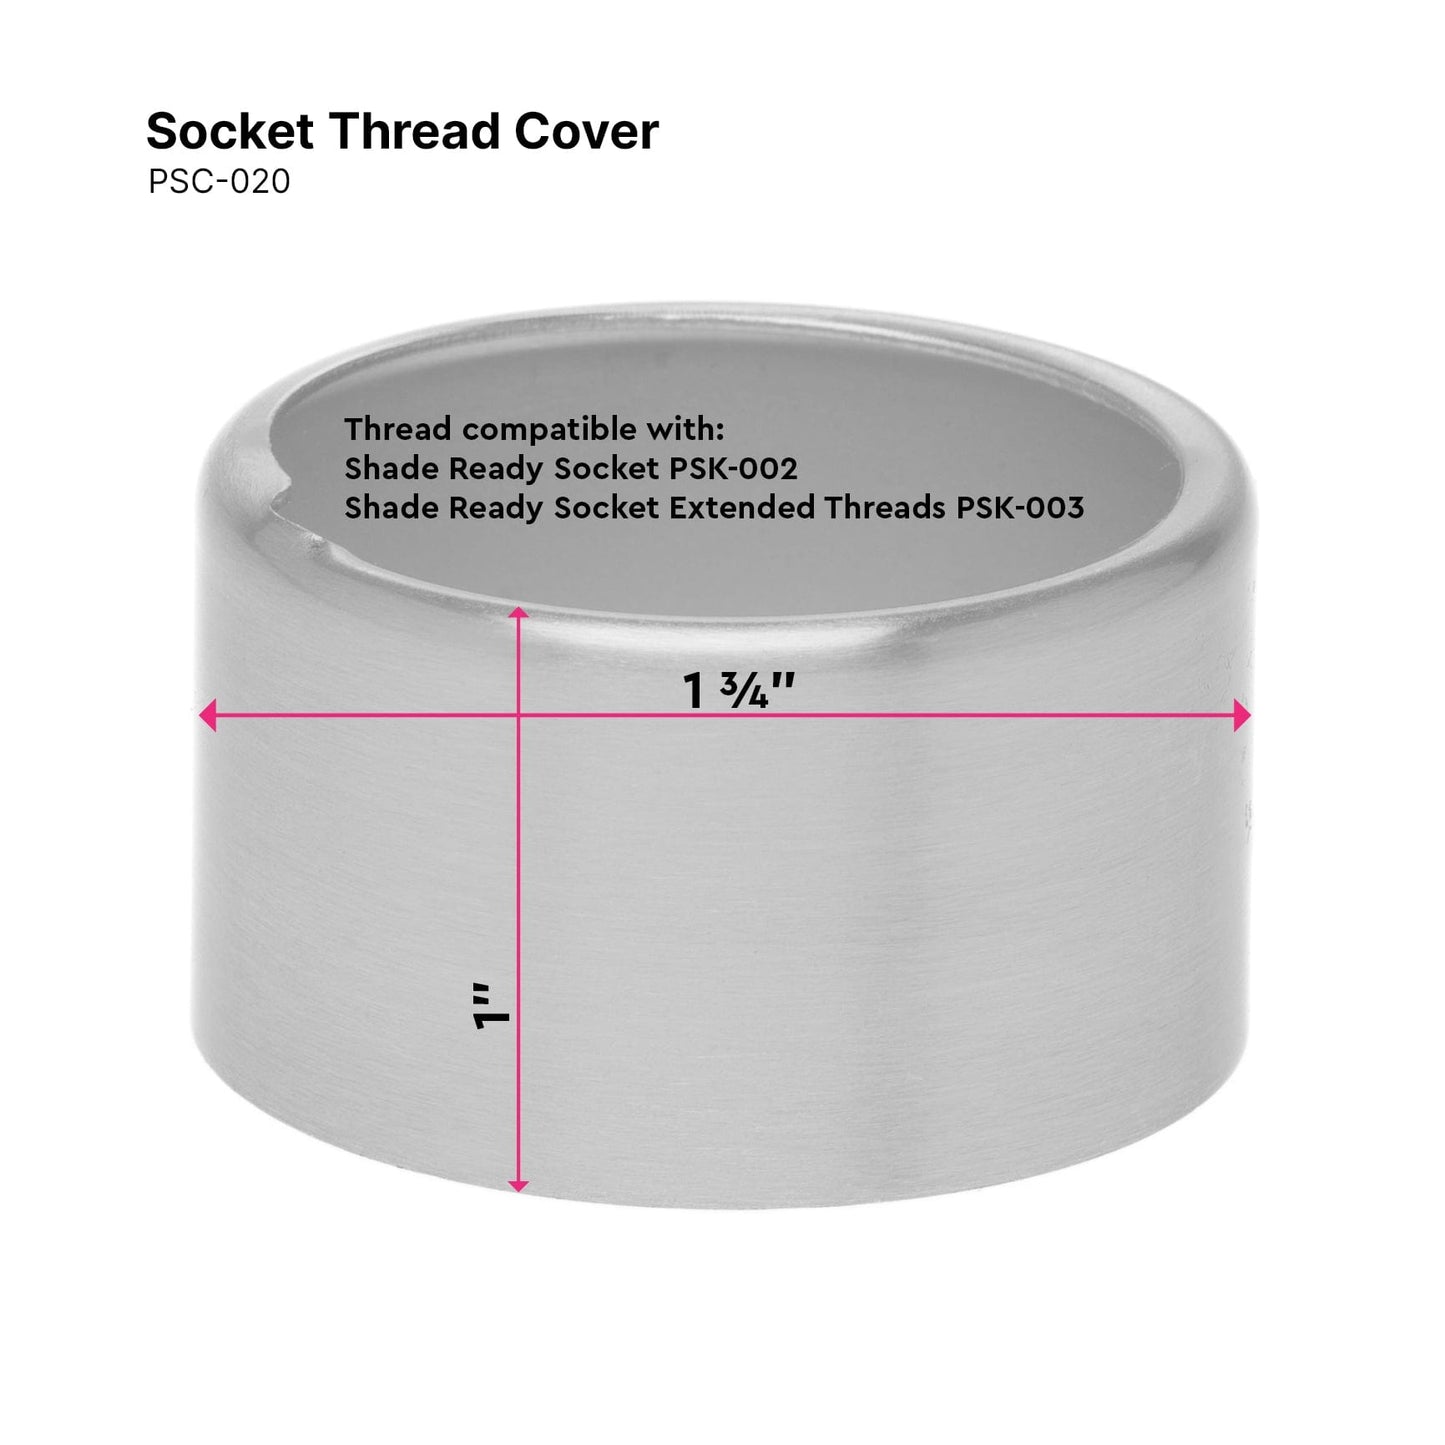 Thread Cover - Shade Ready Socket